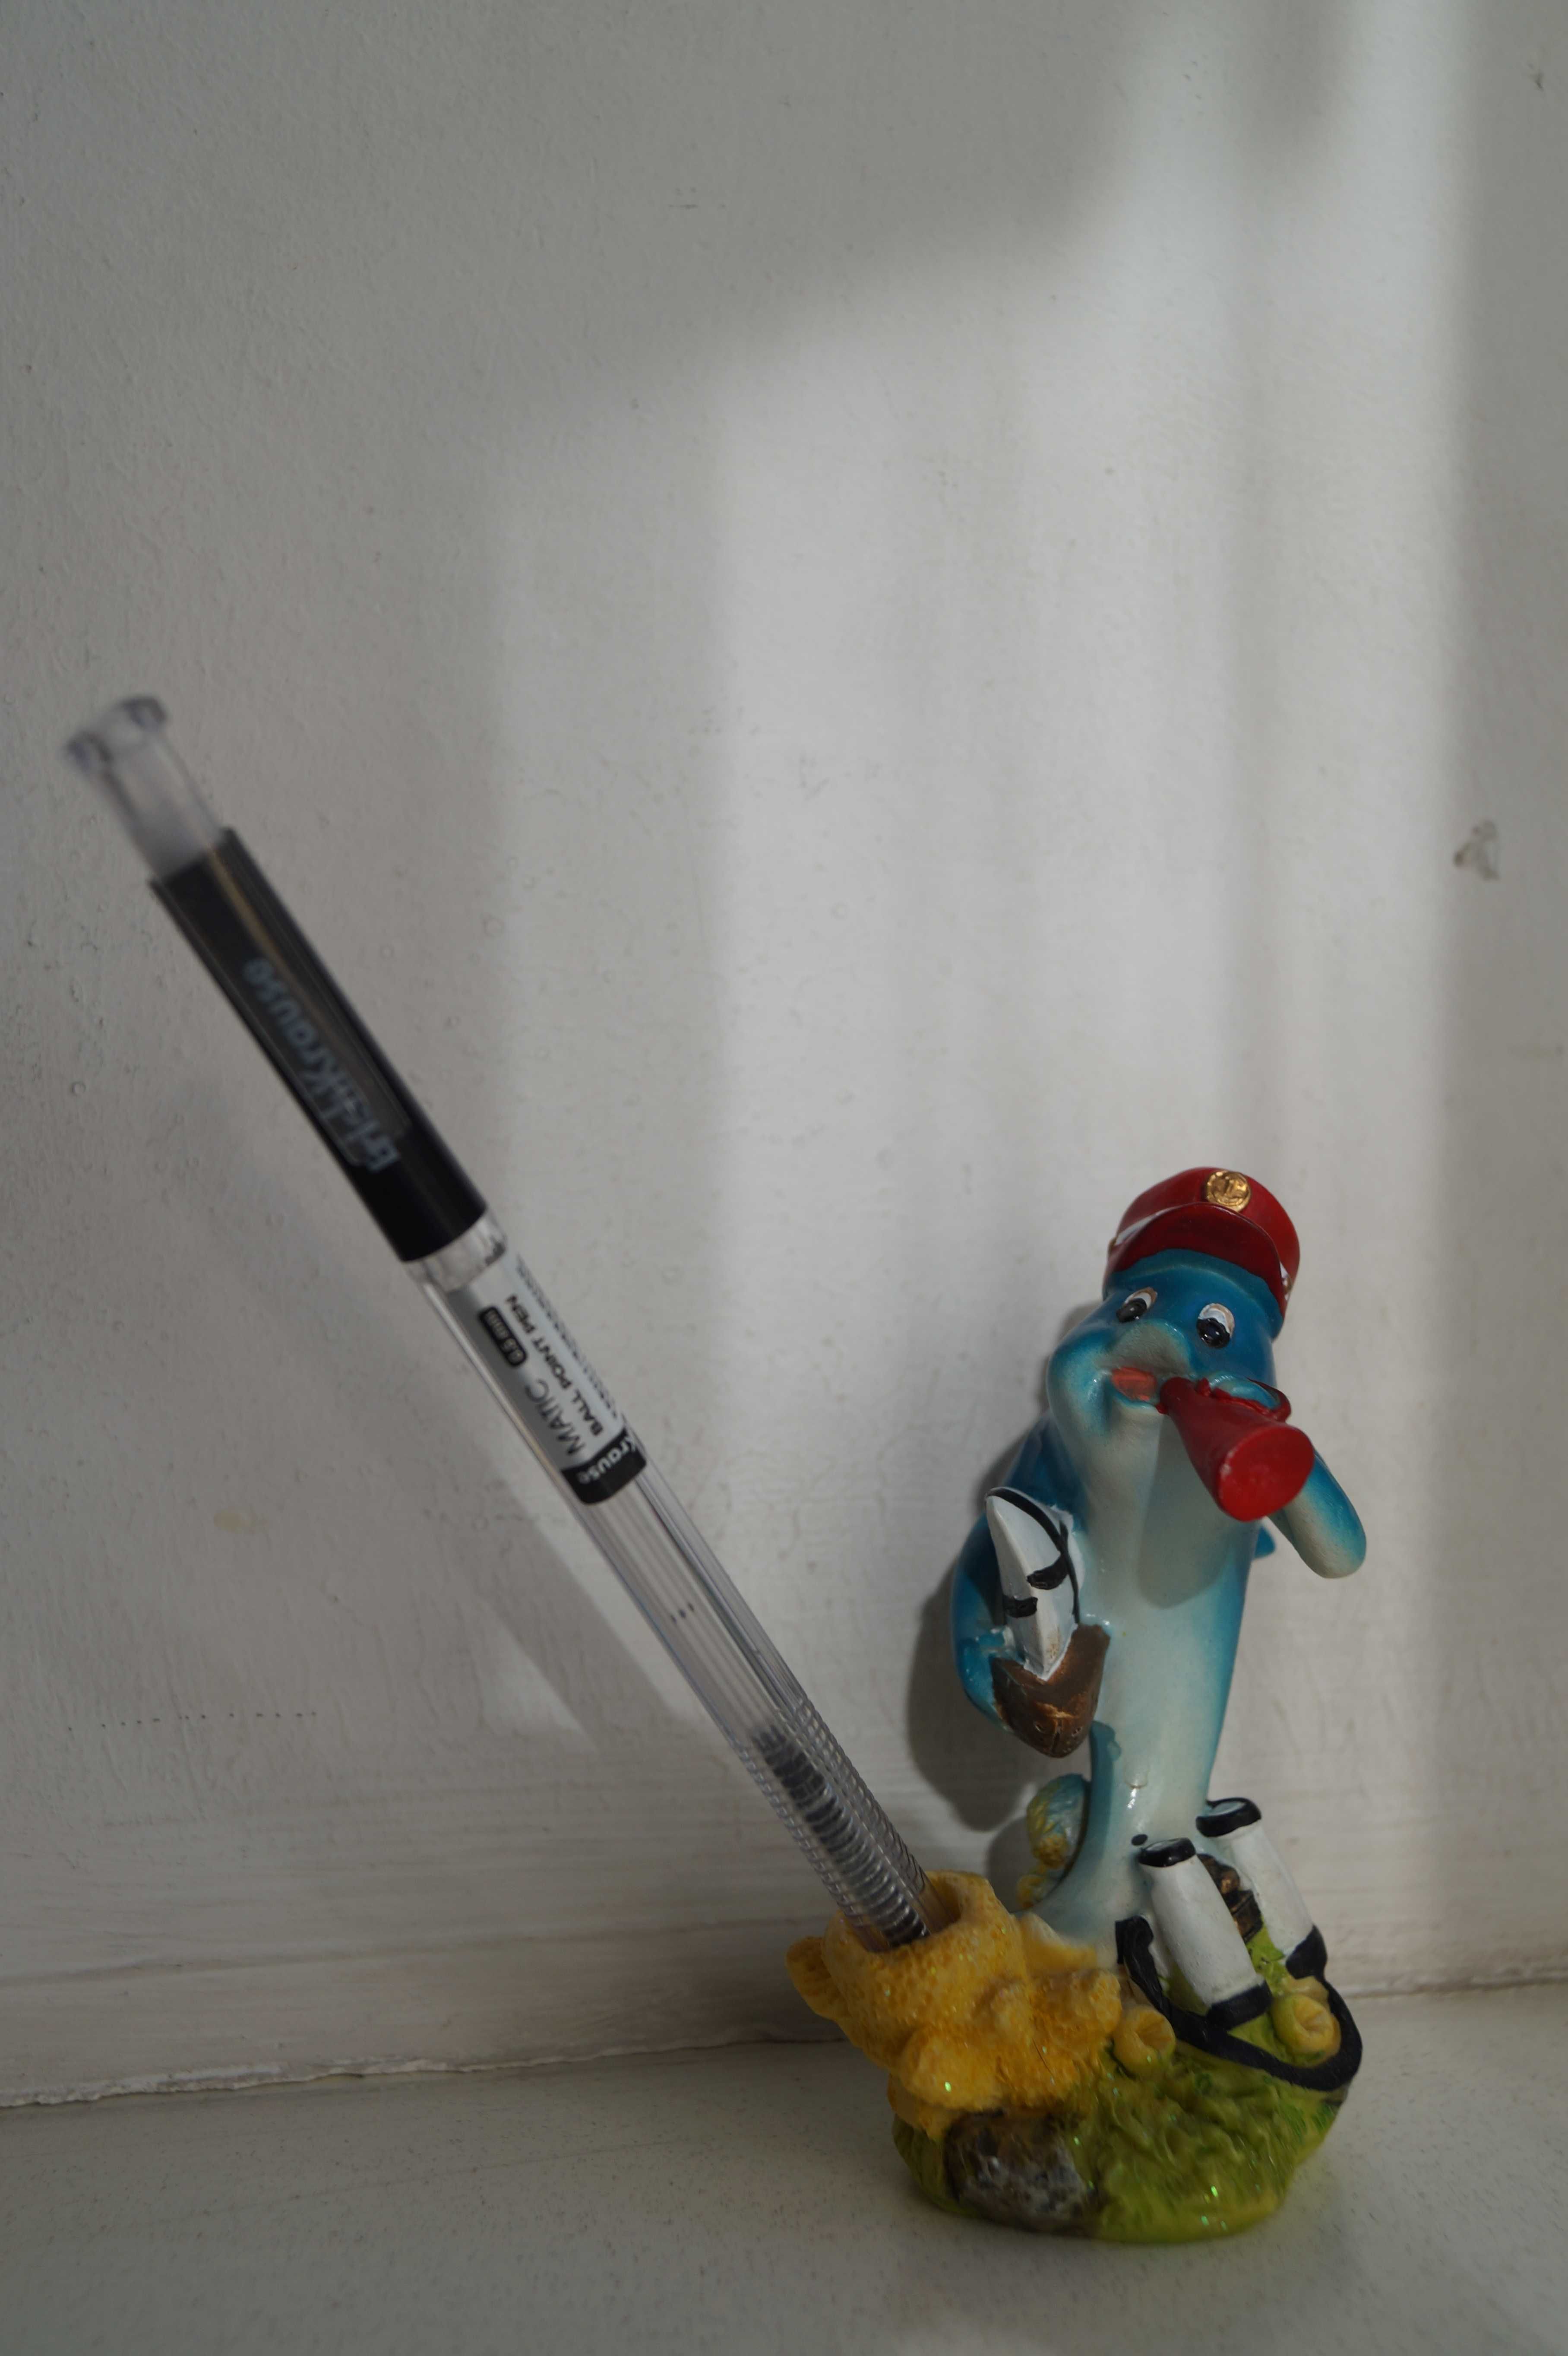 Статуэтка фигурка дельфин подставка для ручки морская тема винтаж